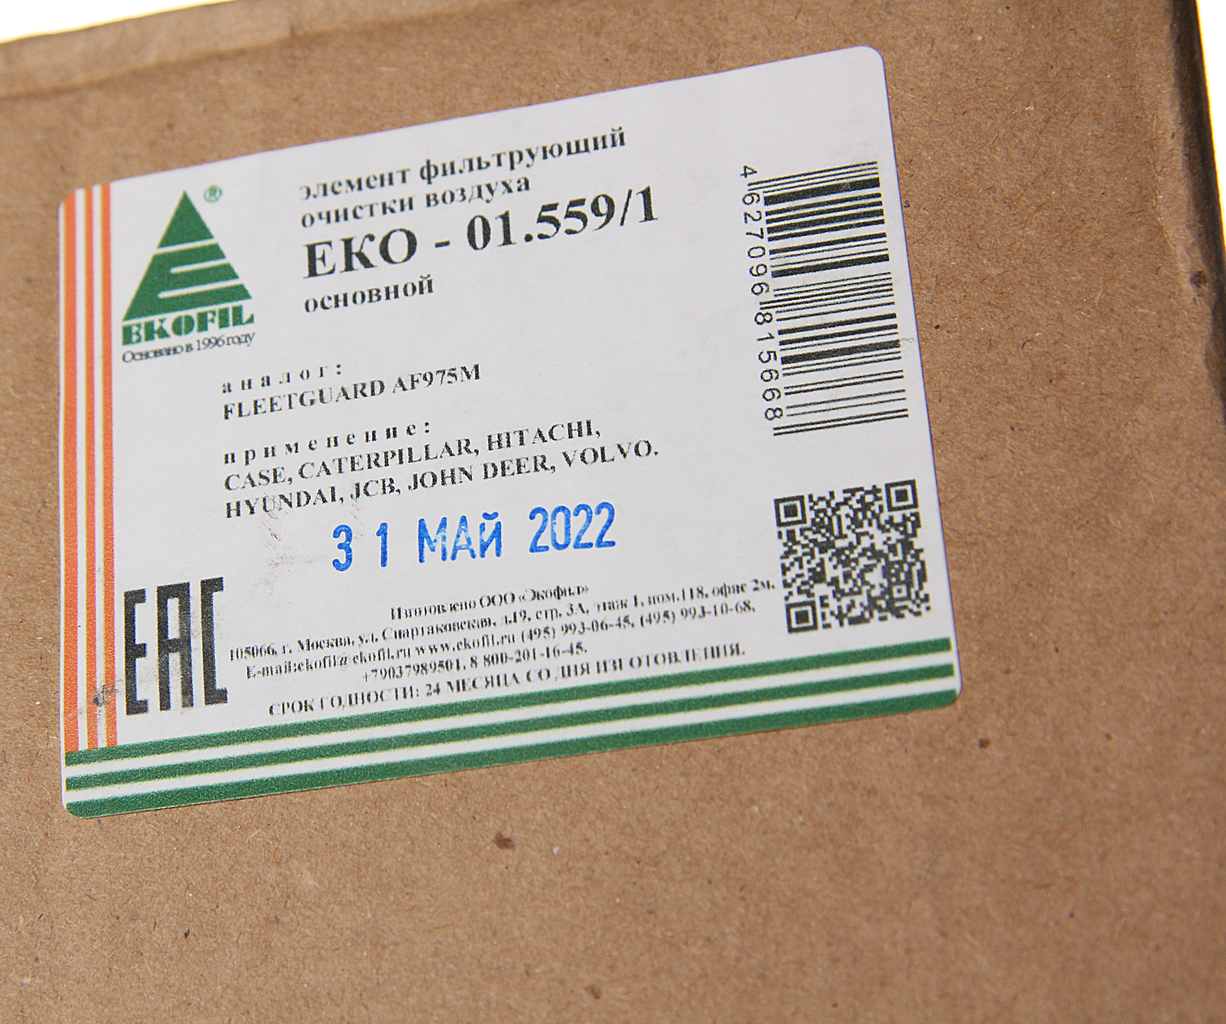 Фильтр воздушный CASE внешний, EKO-01.559/1, EKOFIL